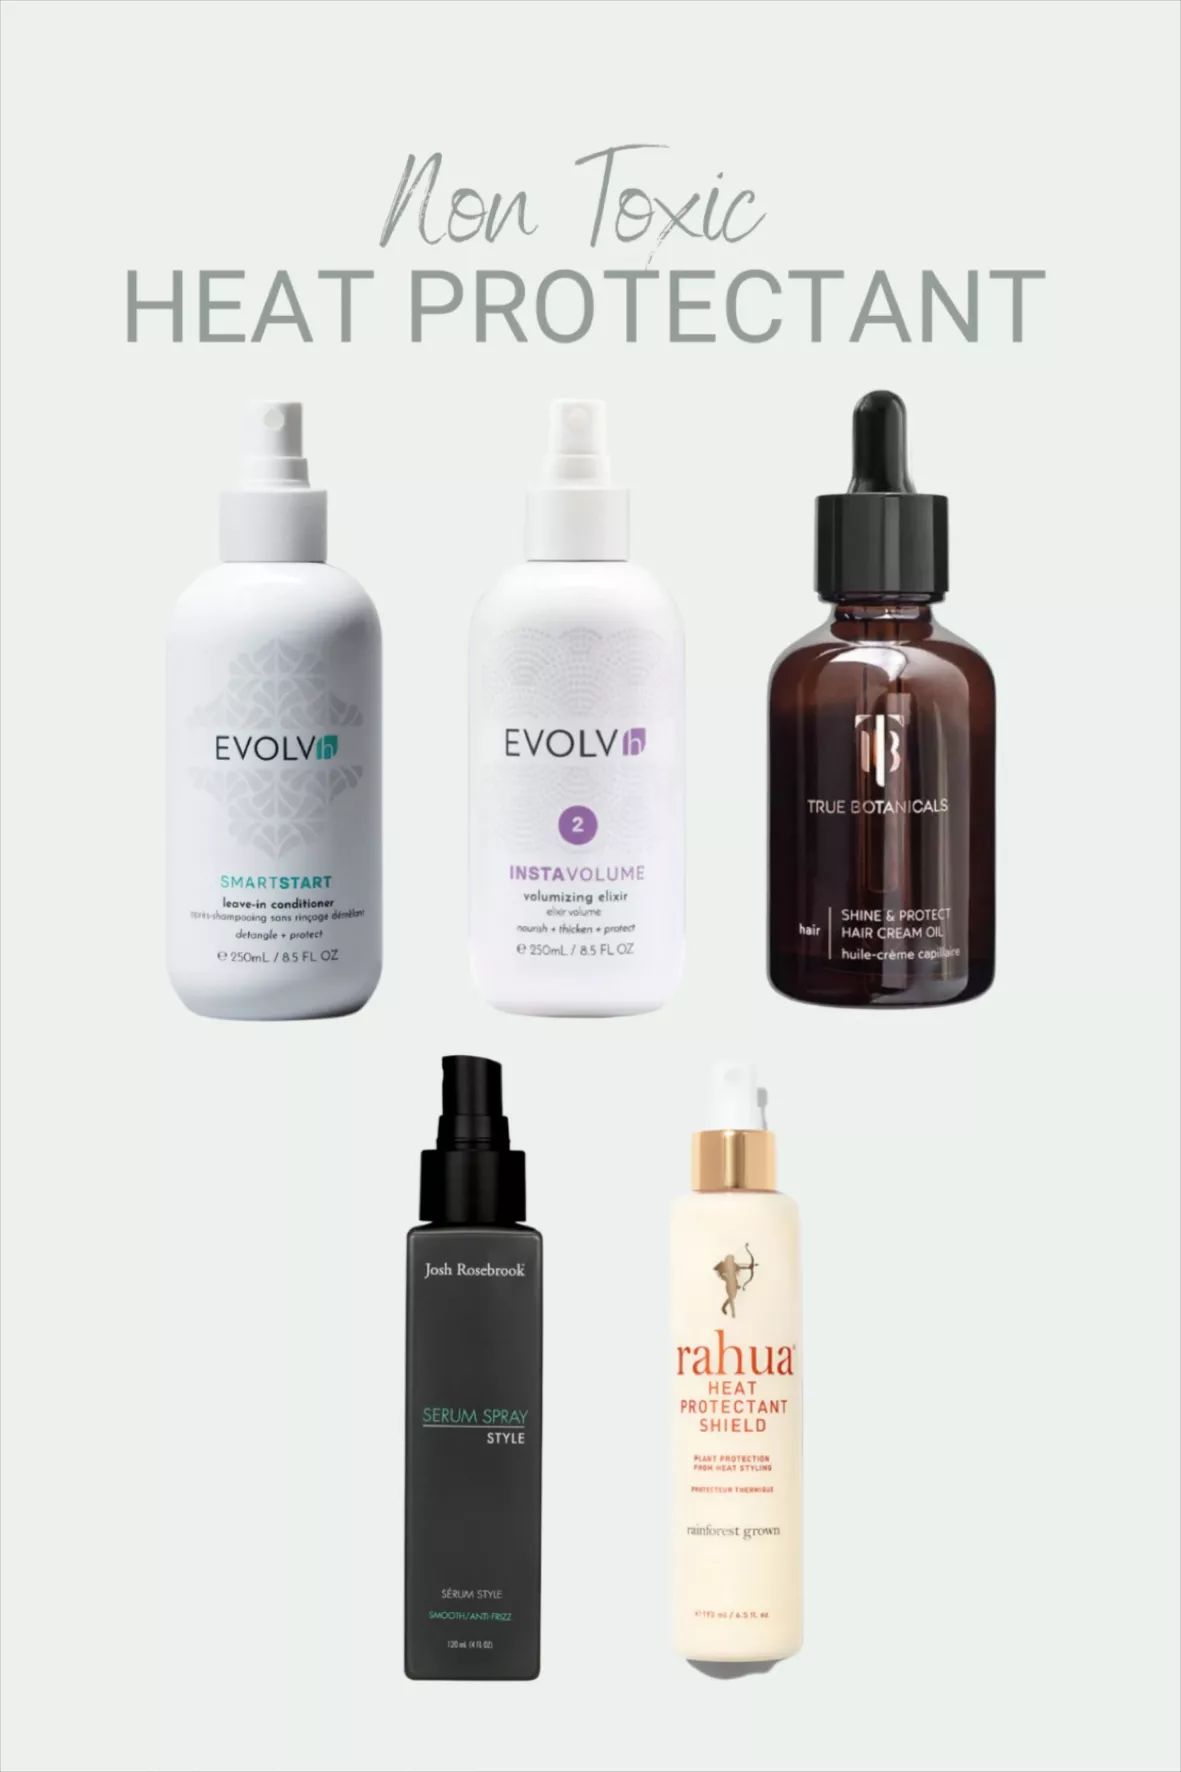 Rahua Heat Protectant Shield